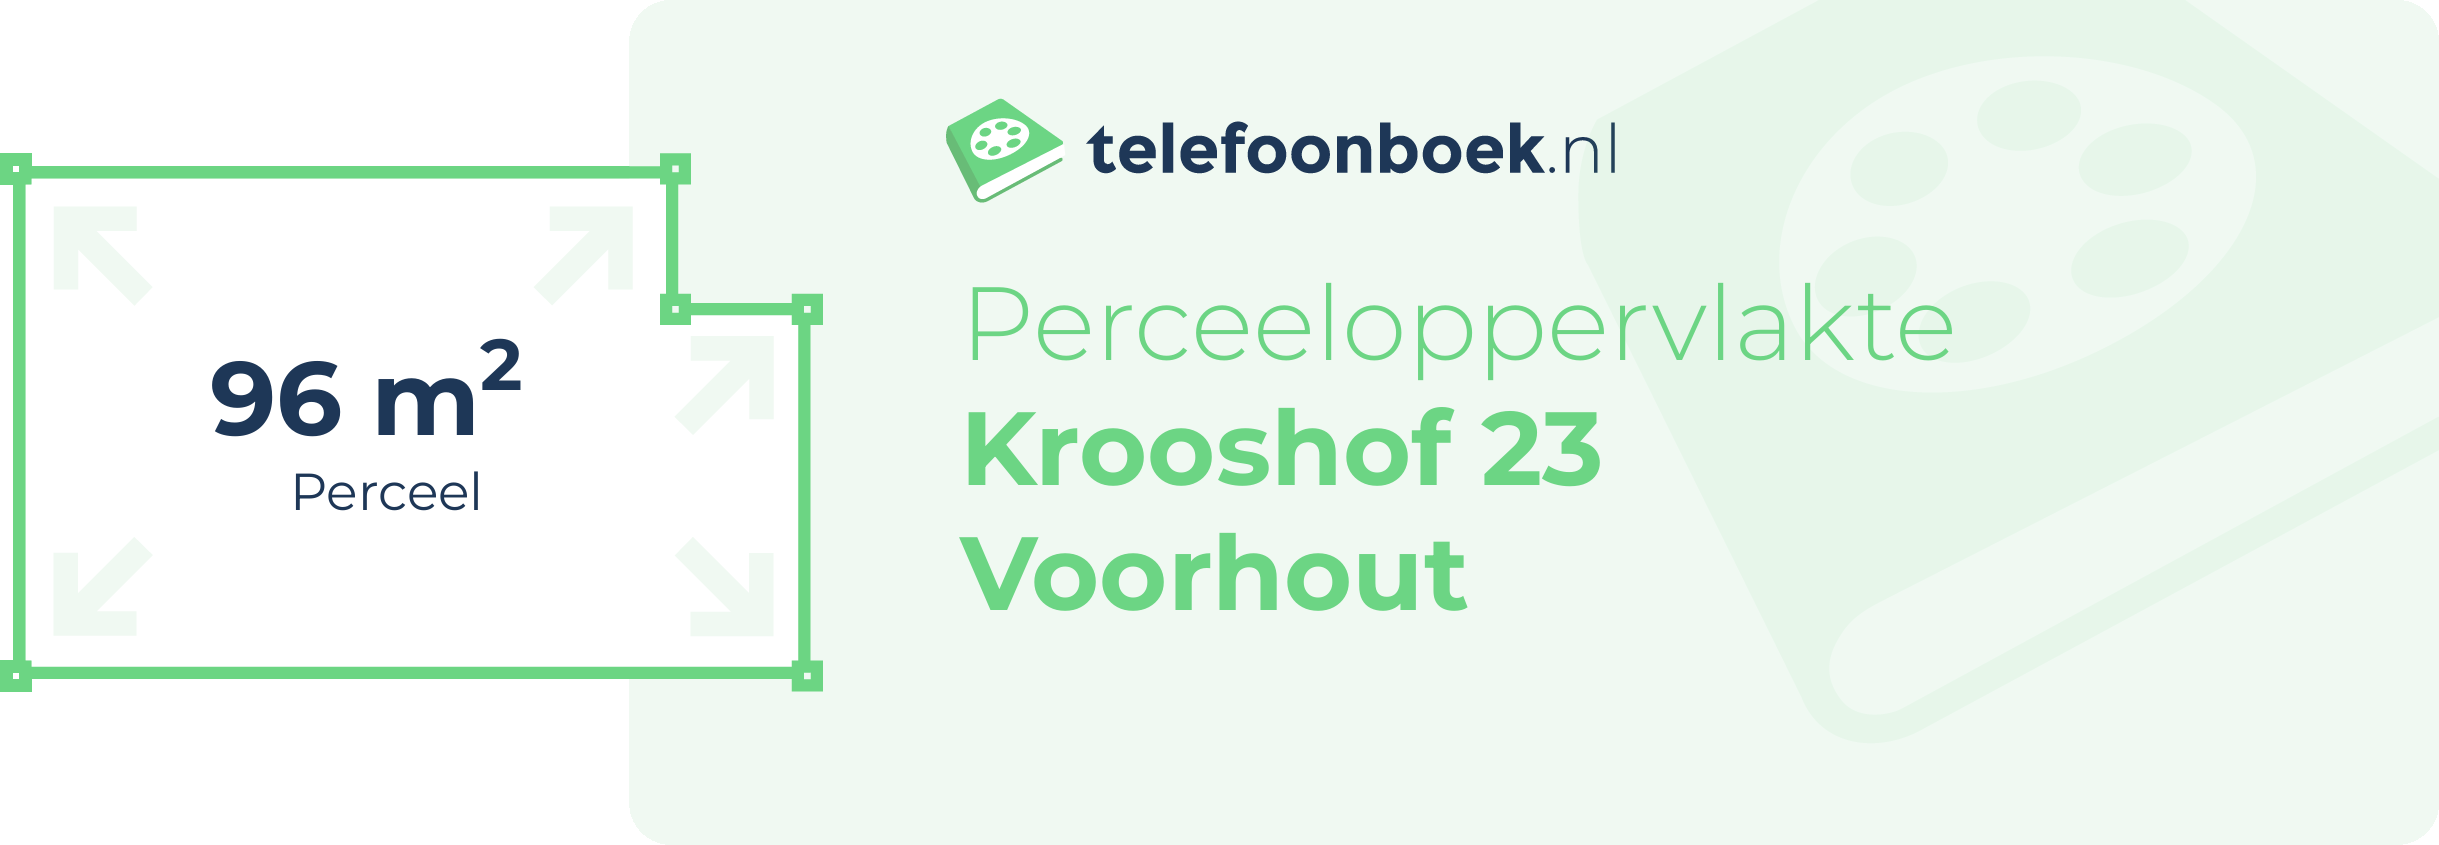 Perceeloppervlakte Krooshof 23 Voorhout